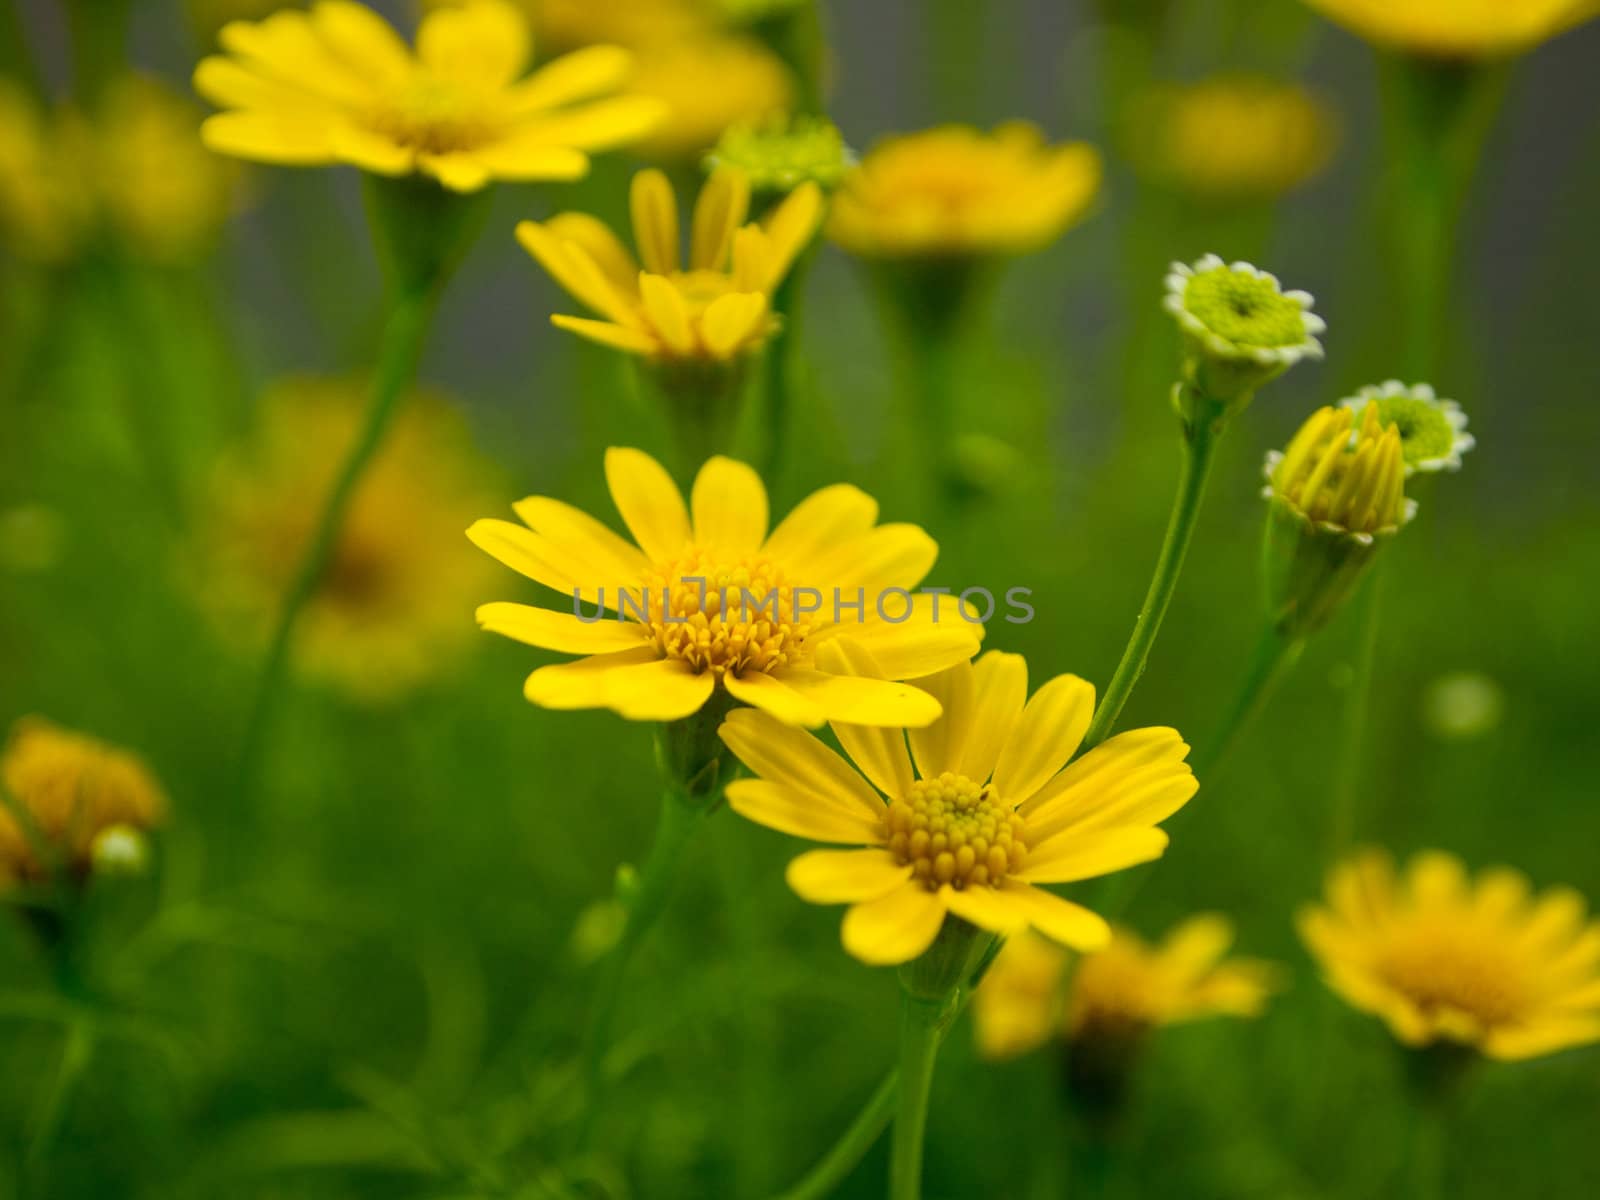 Yellow daisy in the garden by gjeerawut